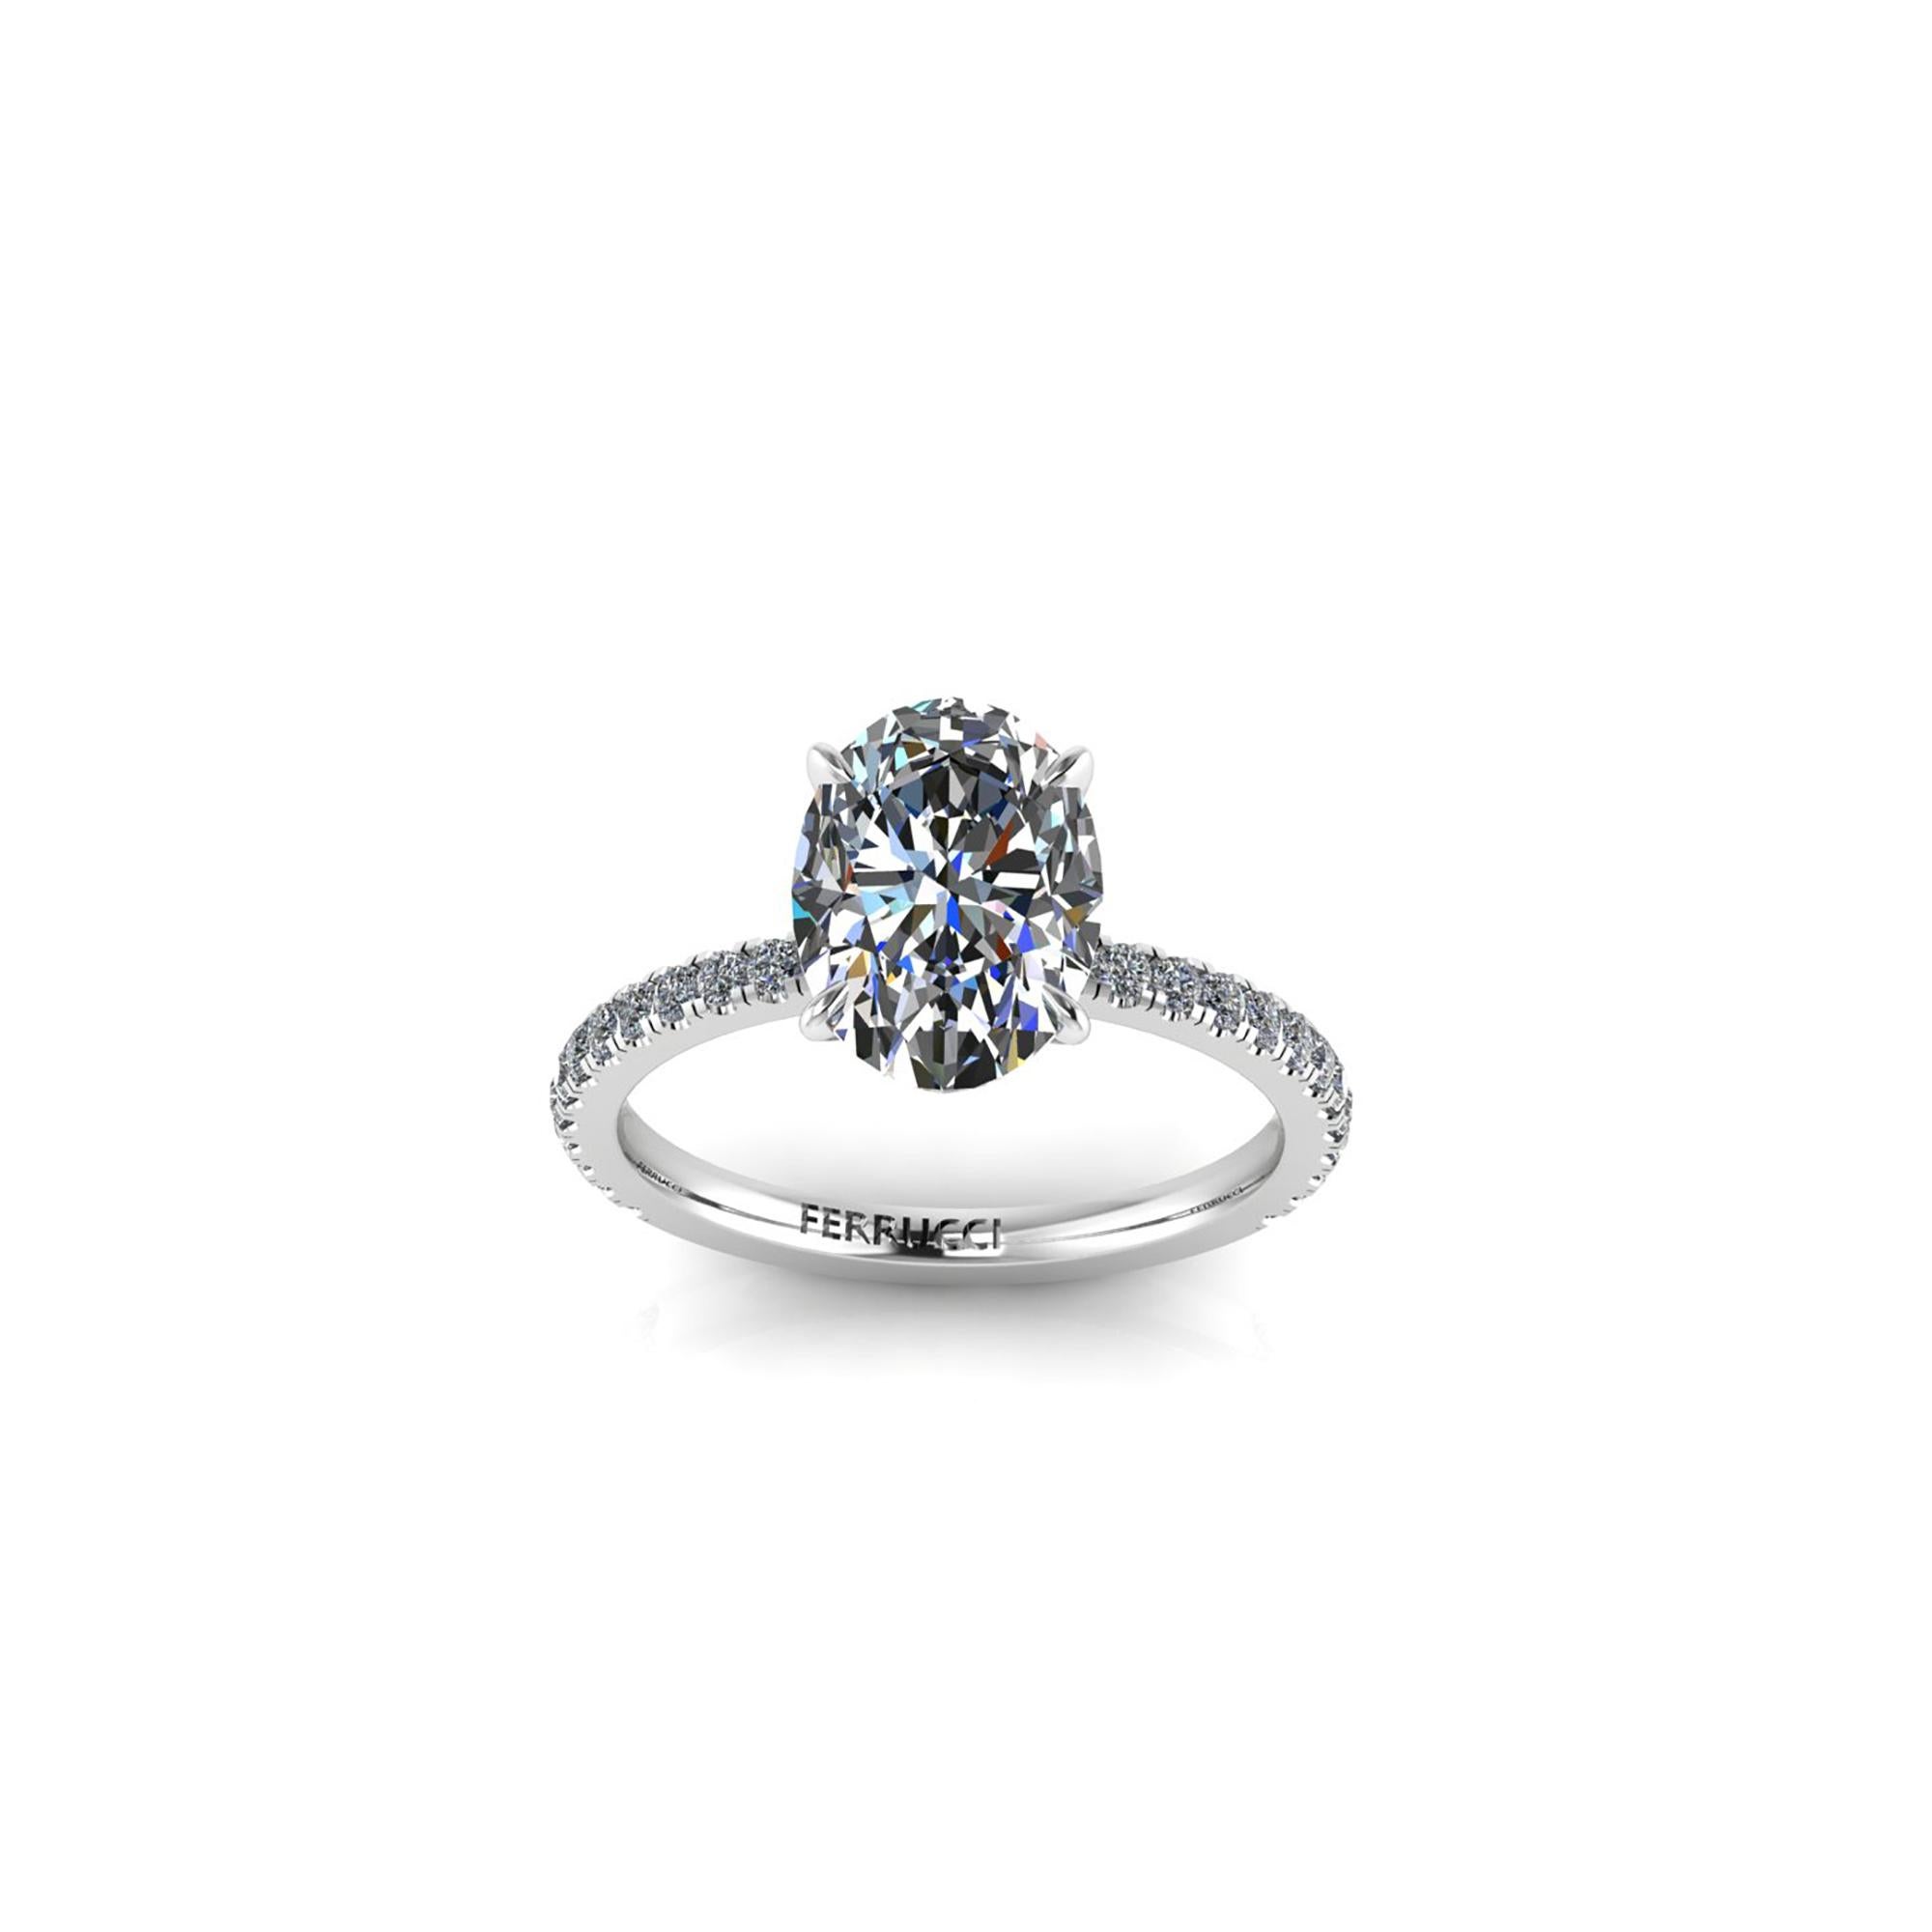 Diamant ovale de 2,01 carats certifié par le GIA, de couleur G et de pureté VS1, un diamant de qualité supérieure, serti dans une bague en platine 950. Des diamants pavés sont sertis sur les épaules de la tige pour embellir l'anneau.  pierre